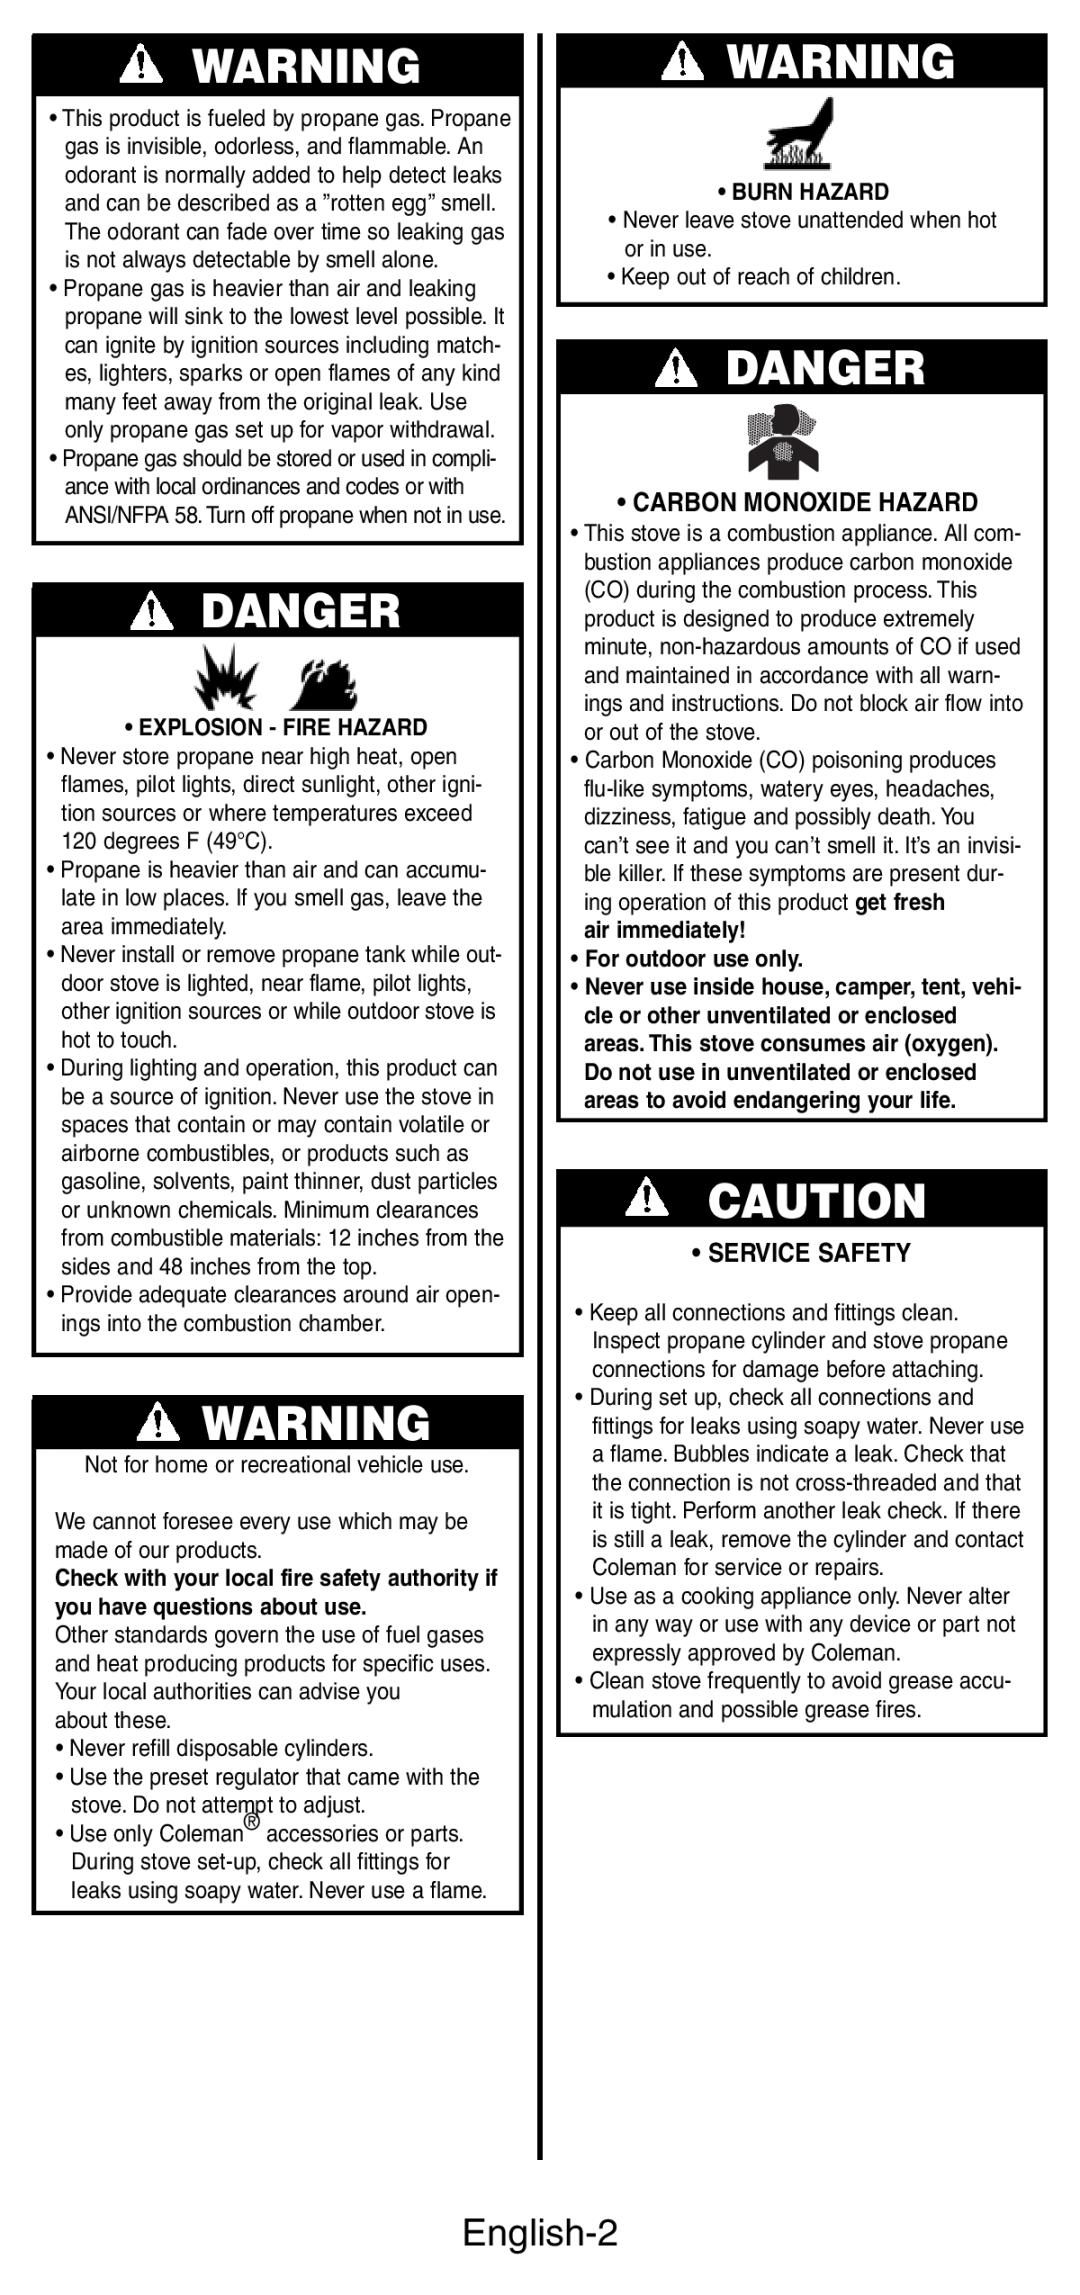 Coleman 5444 Series manual Danger, English-2, Carbon Monoxide Hazard, Service Safety, Explosion - Fire Hazard, Burn Hazard 